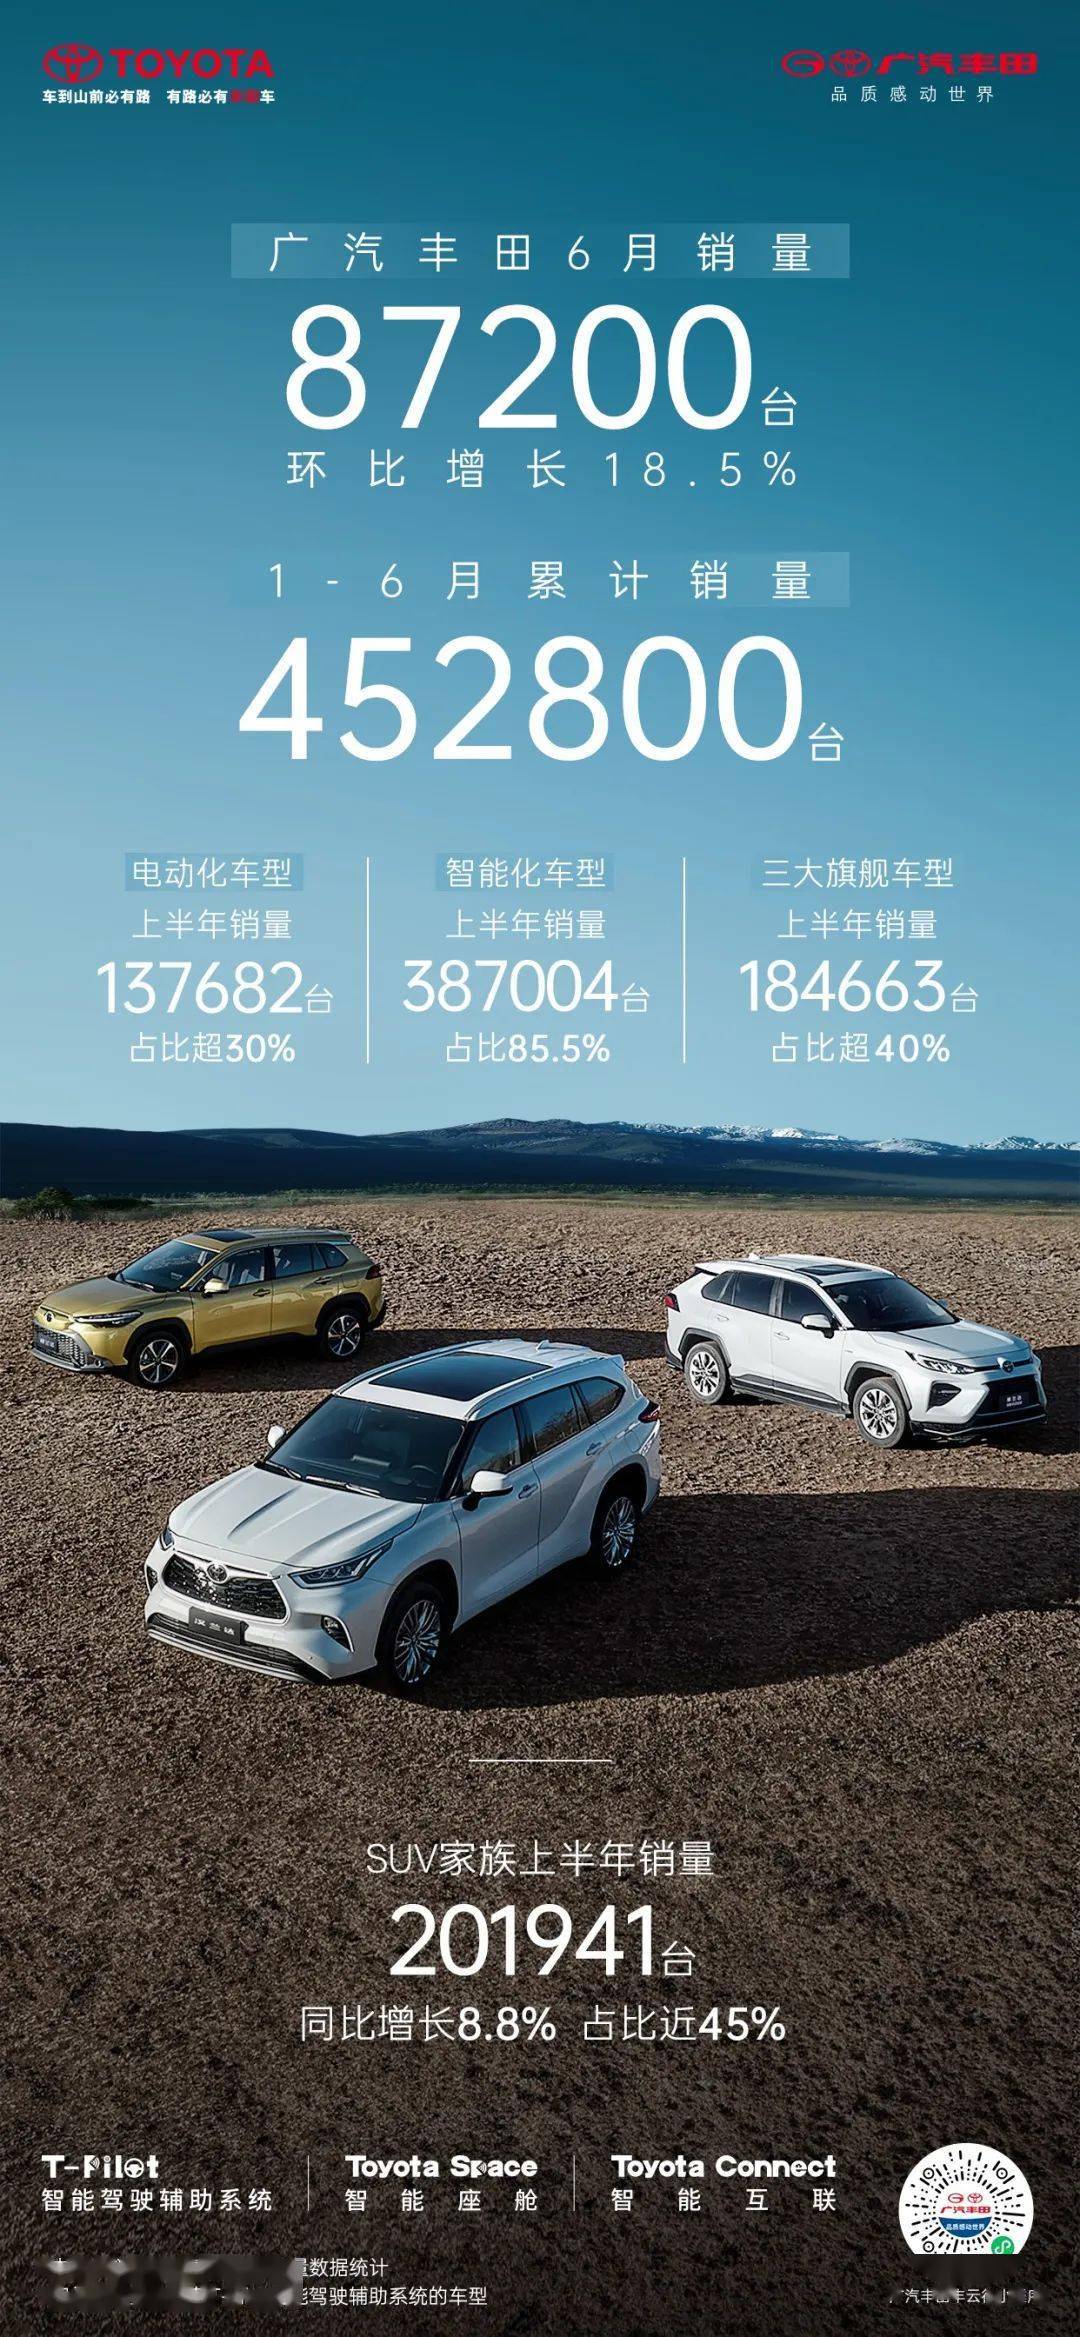 广汽丰田：今年上半年汽车销量 452800台 环比增长18.5%